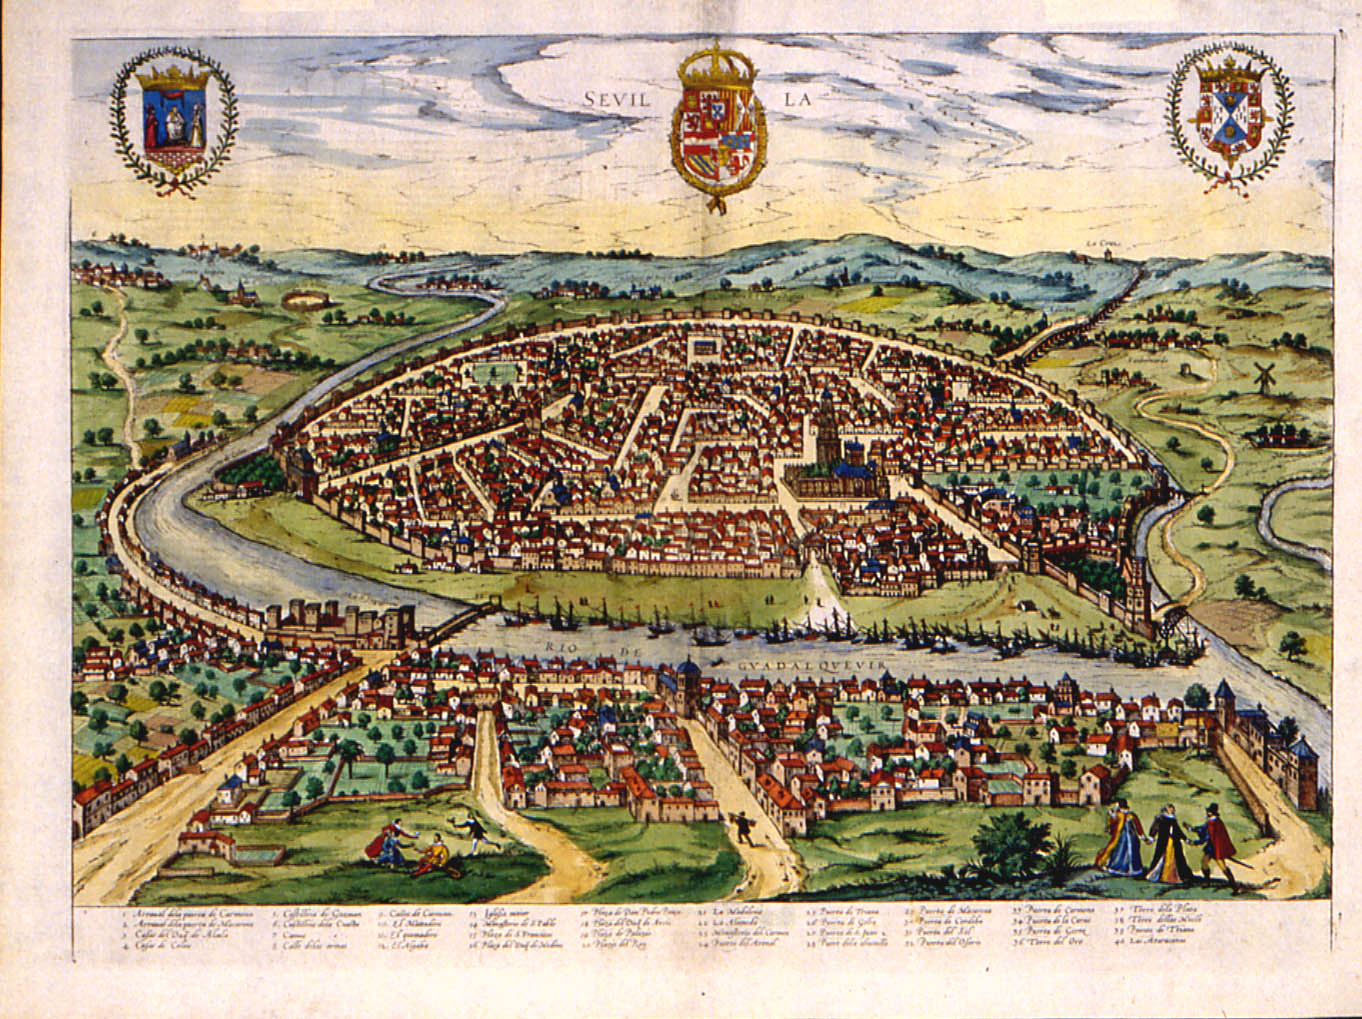 Sevilla circa 1588